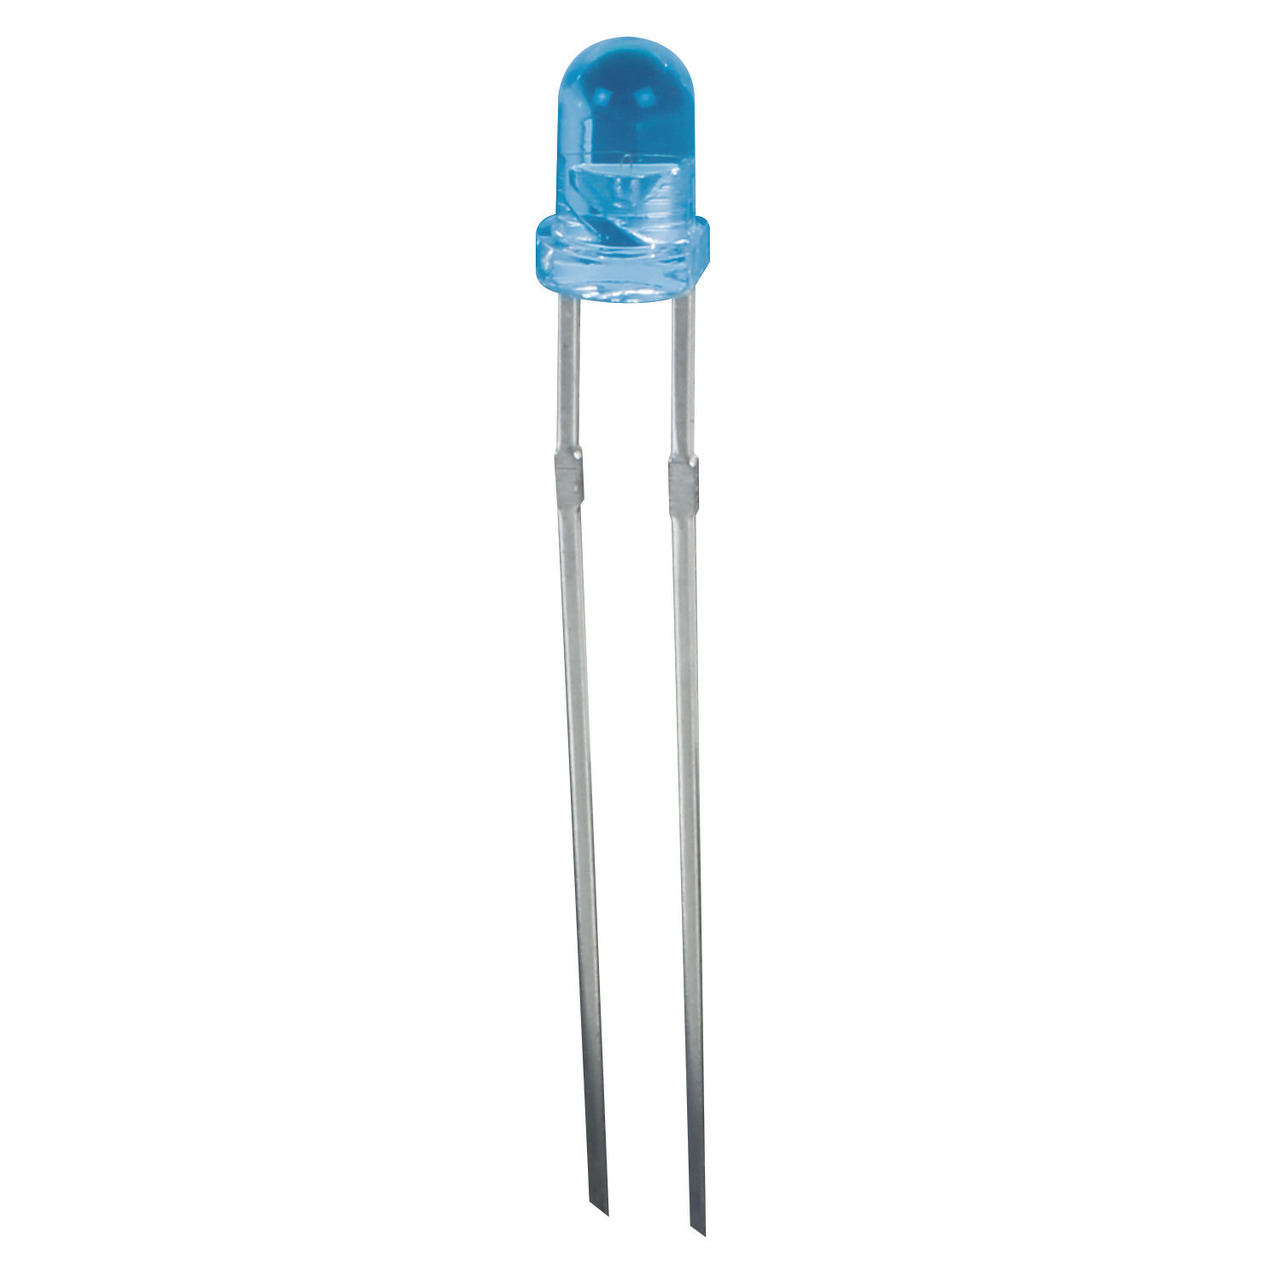 Velleman 30x blaue LED 3 mm K-LED30B- für Bausatz MK193 unter Komponenten